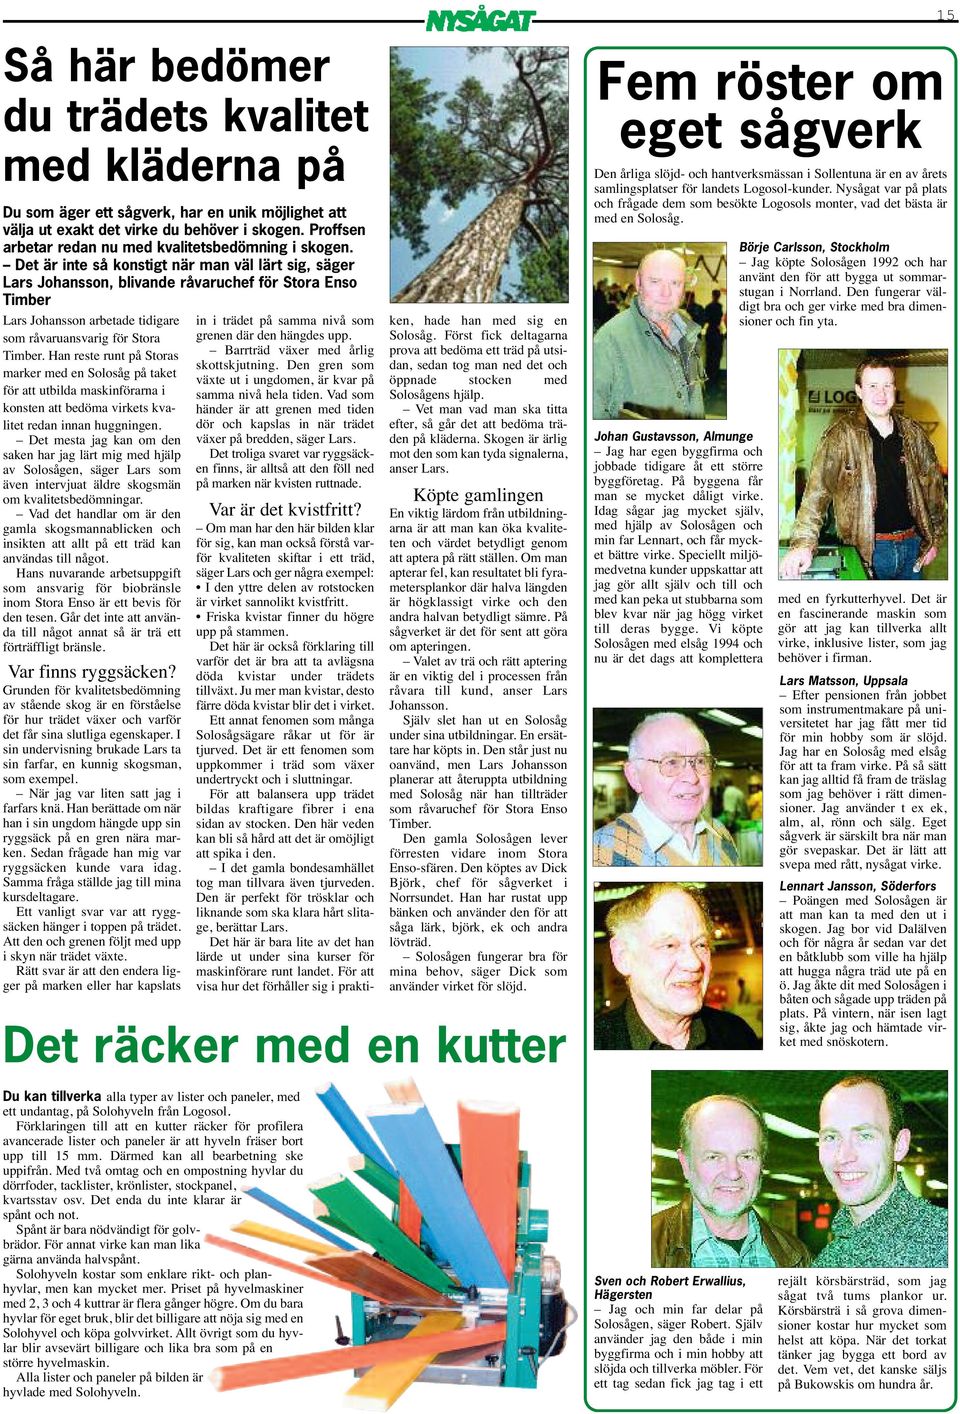 Det är inte så konstigt när man väl lärt sig, säger Lars Johansson, blivande råvaruchef för Stora Enso Timber Lars Johansson arbetade tidigare som råvaruansvarig för Stora Timber.